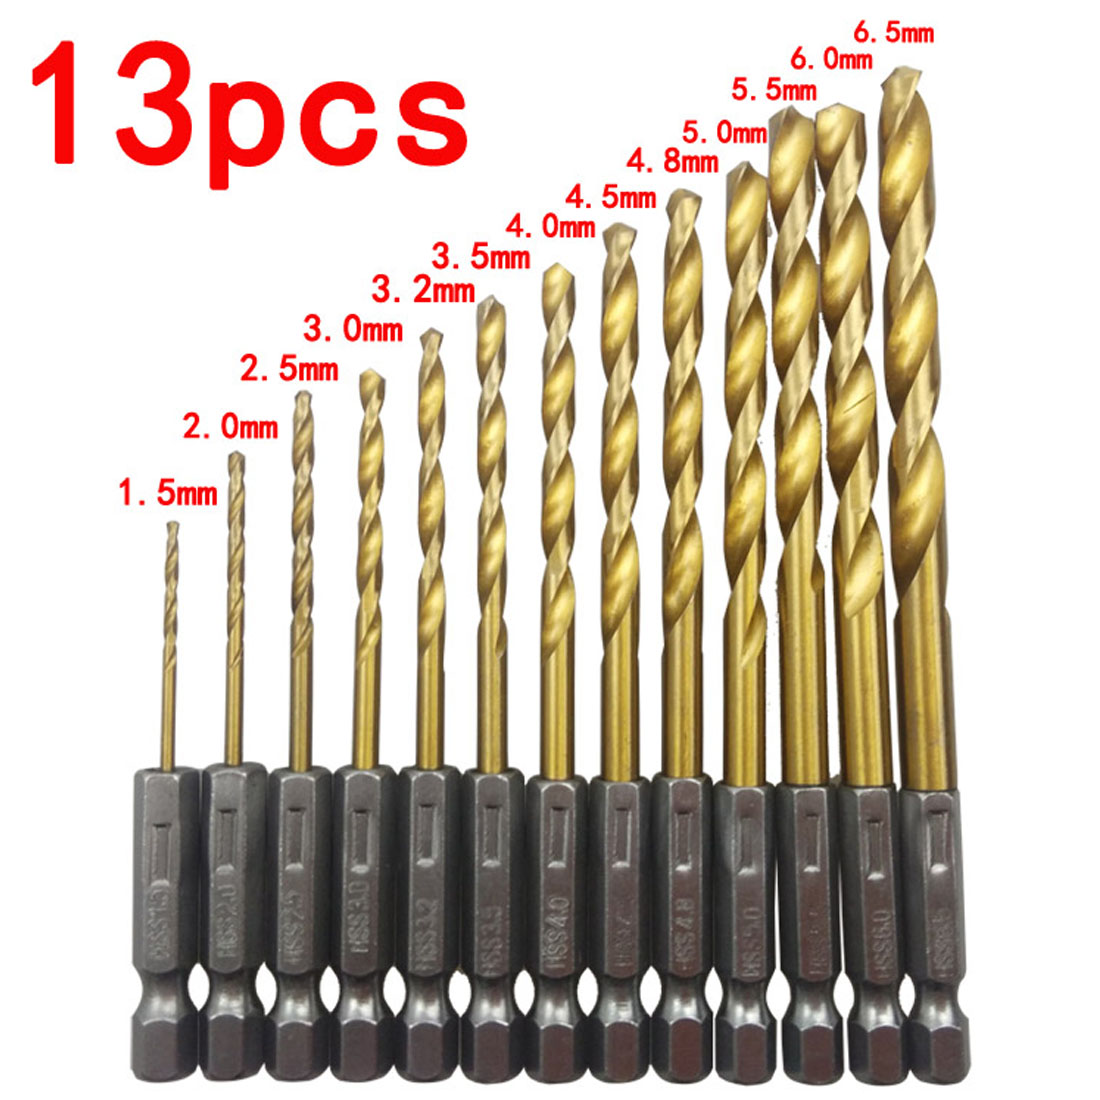 1pcs Drill Bit 3mm Quick Change Metal Tools 1/4" Hex Shank Wood HCS 